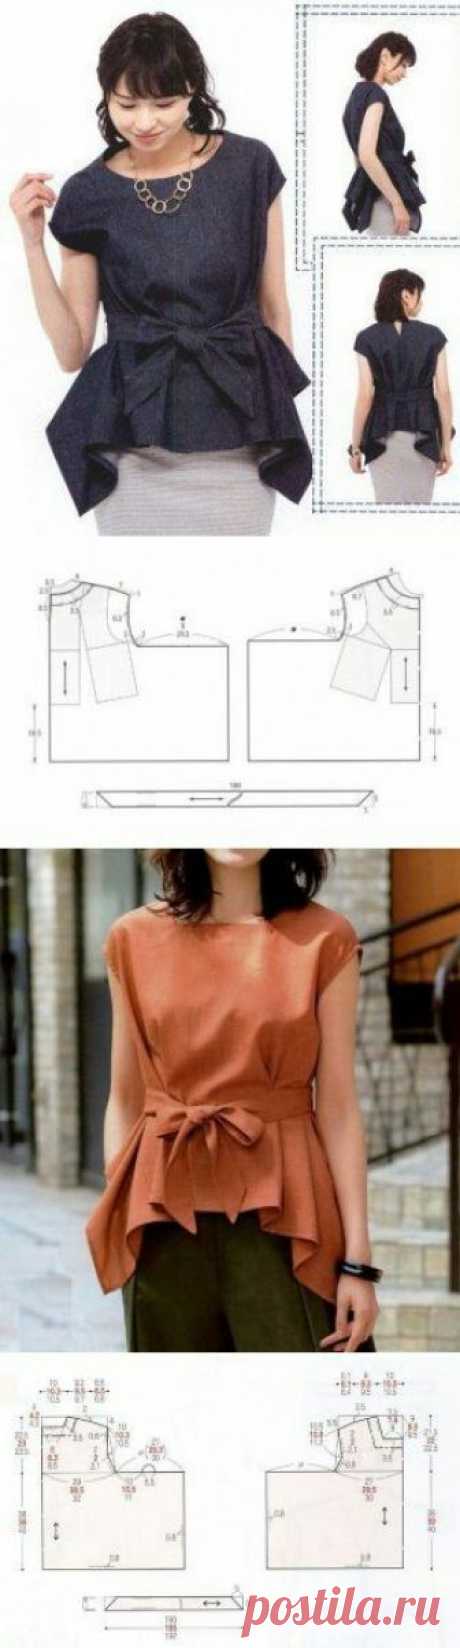 Японская выкройка блузки с углами Модная одежда и дизайн интерьера своими руками